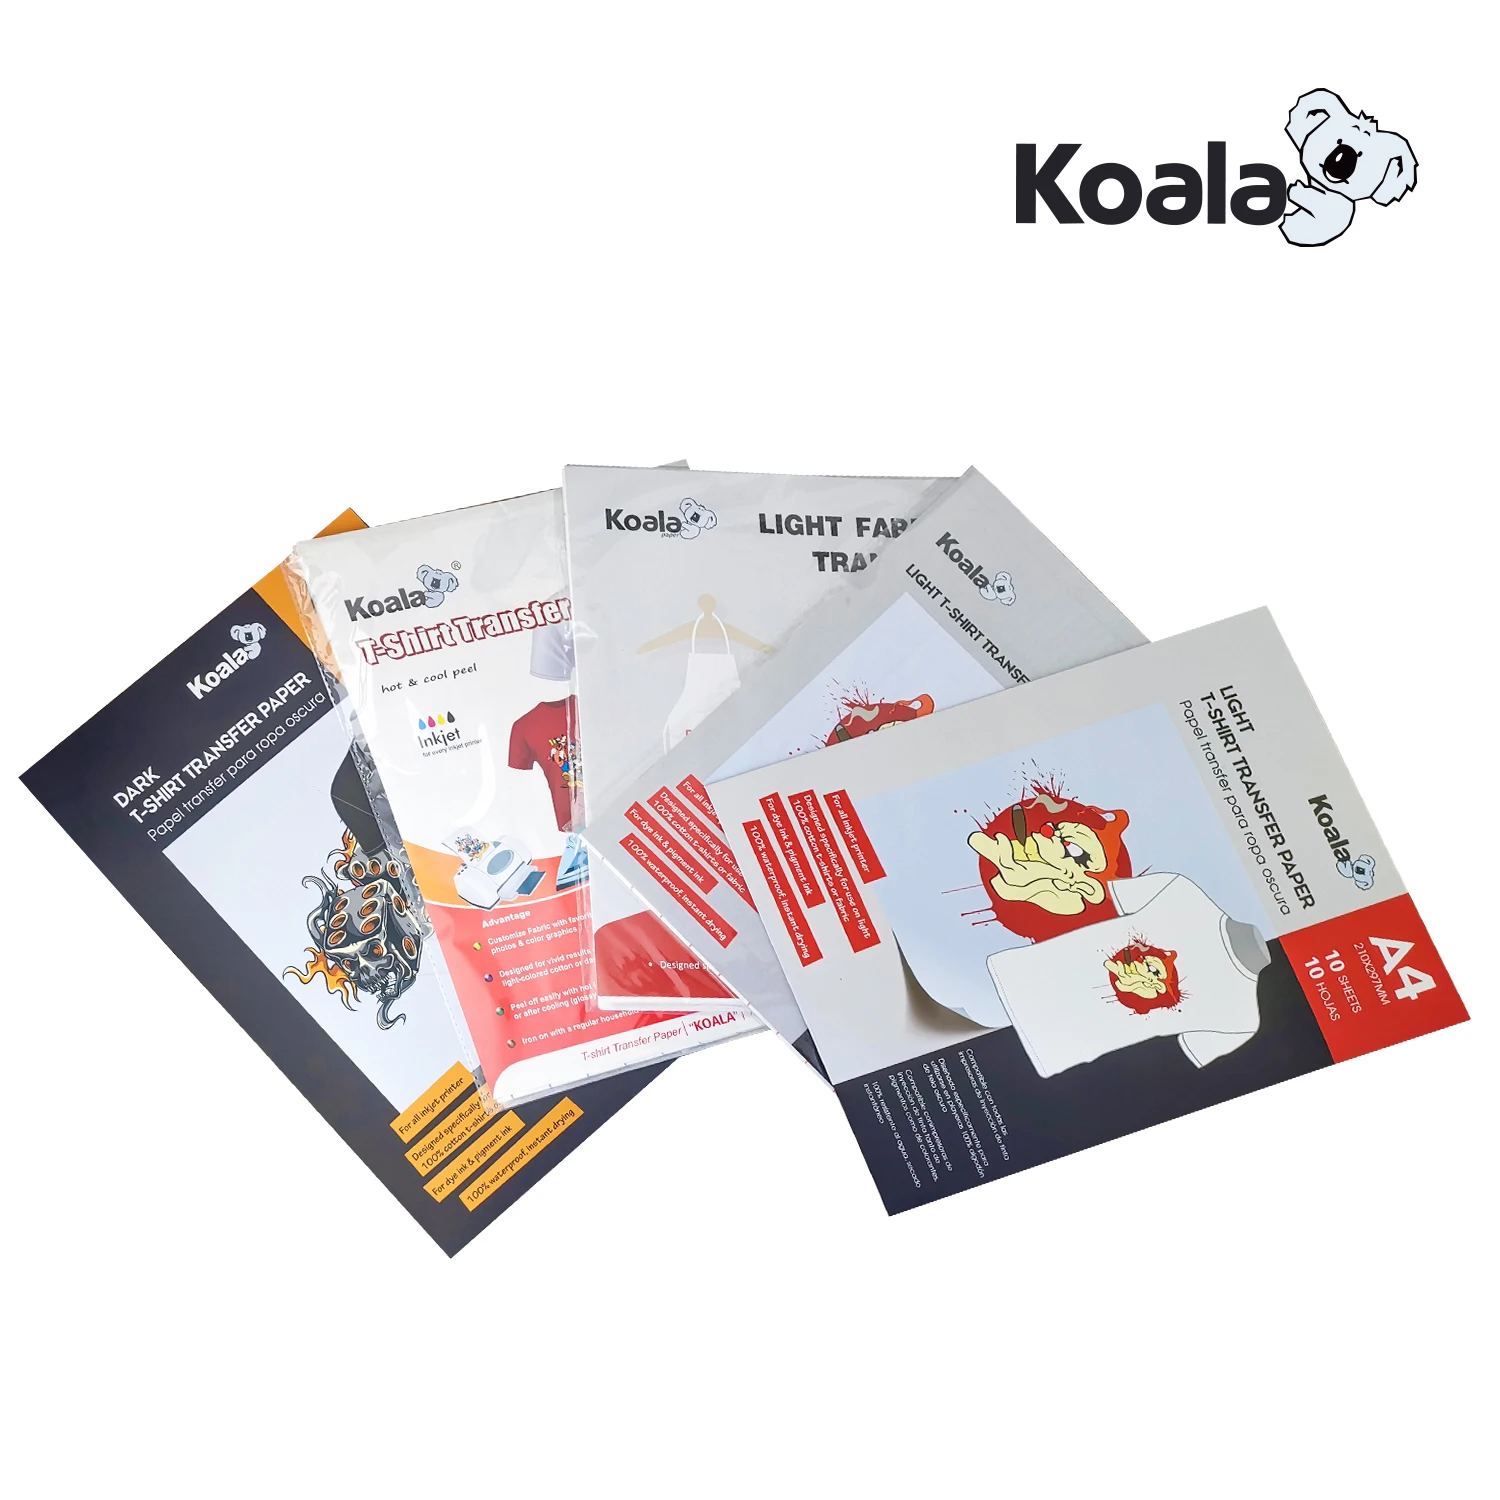 Koalapaper Instant Dry Sublimation Paper